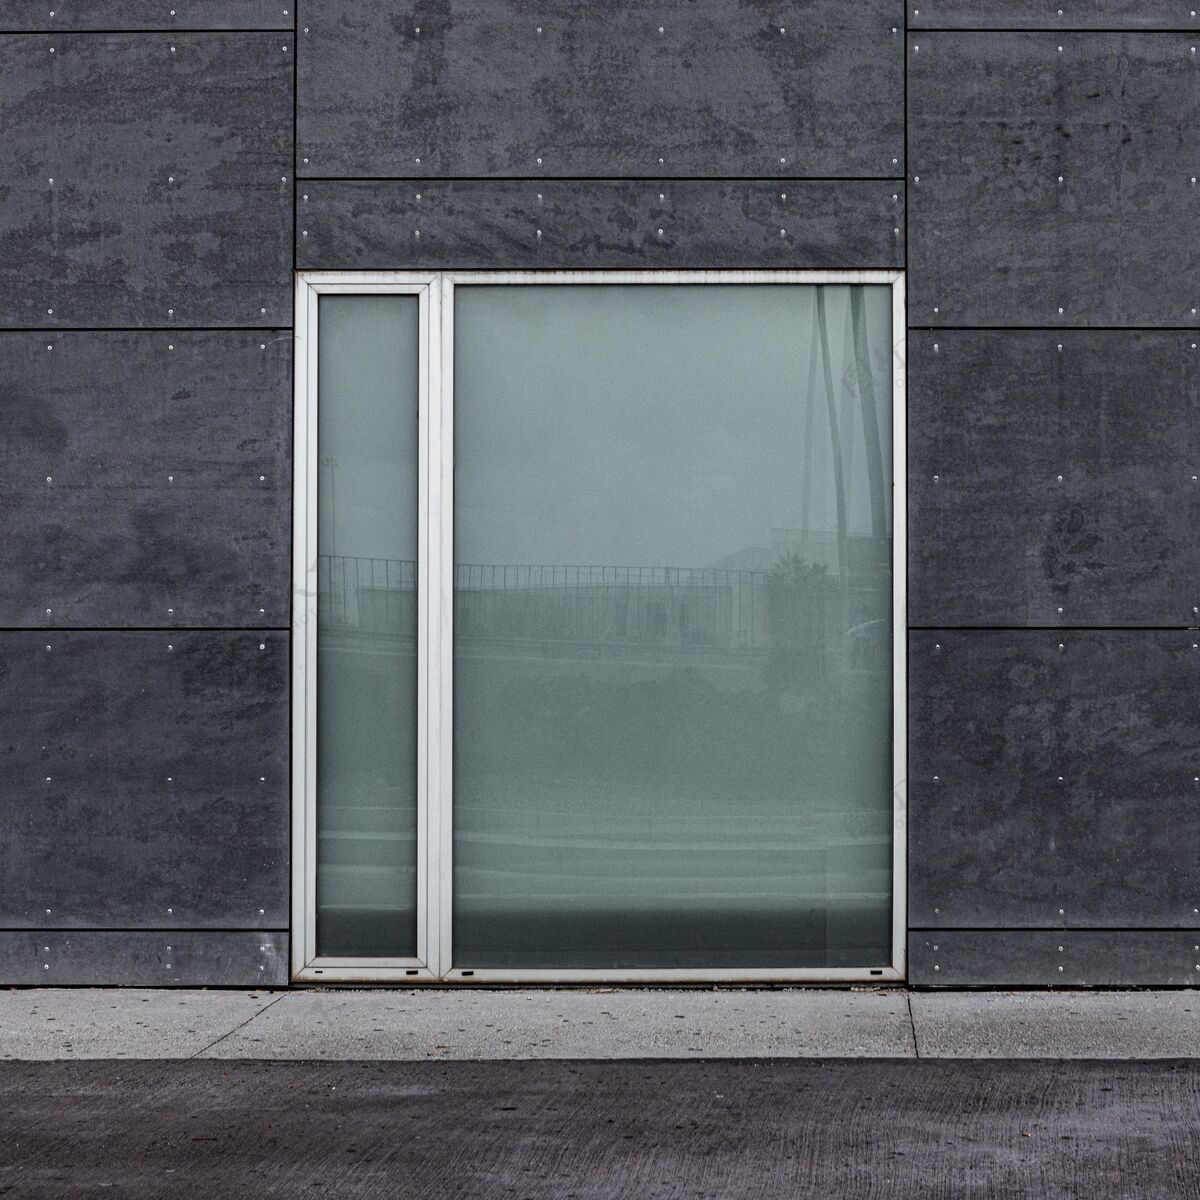 方形城市建筑玻璃窗的正视图简单抽象城市